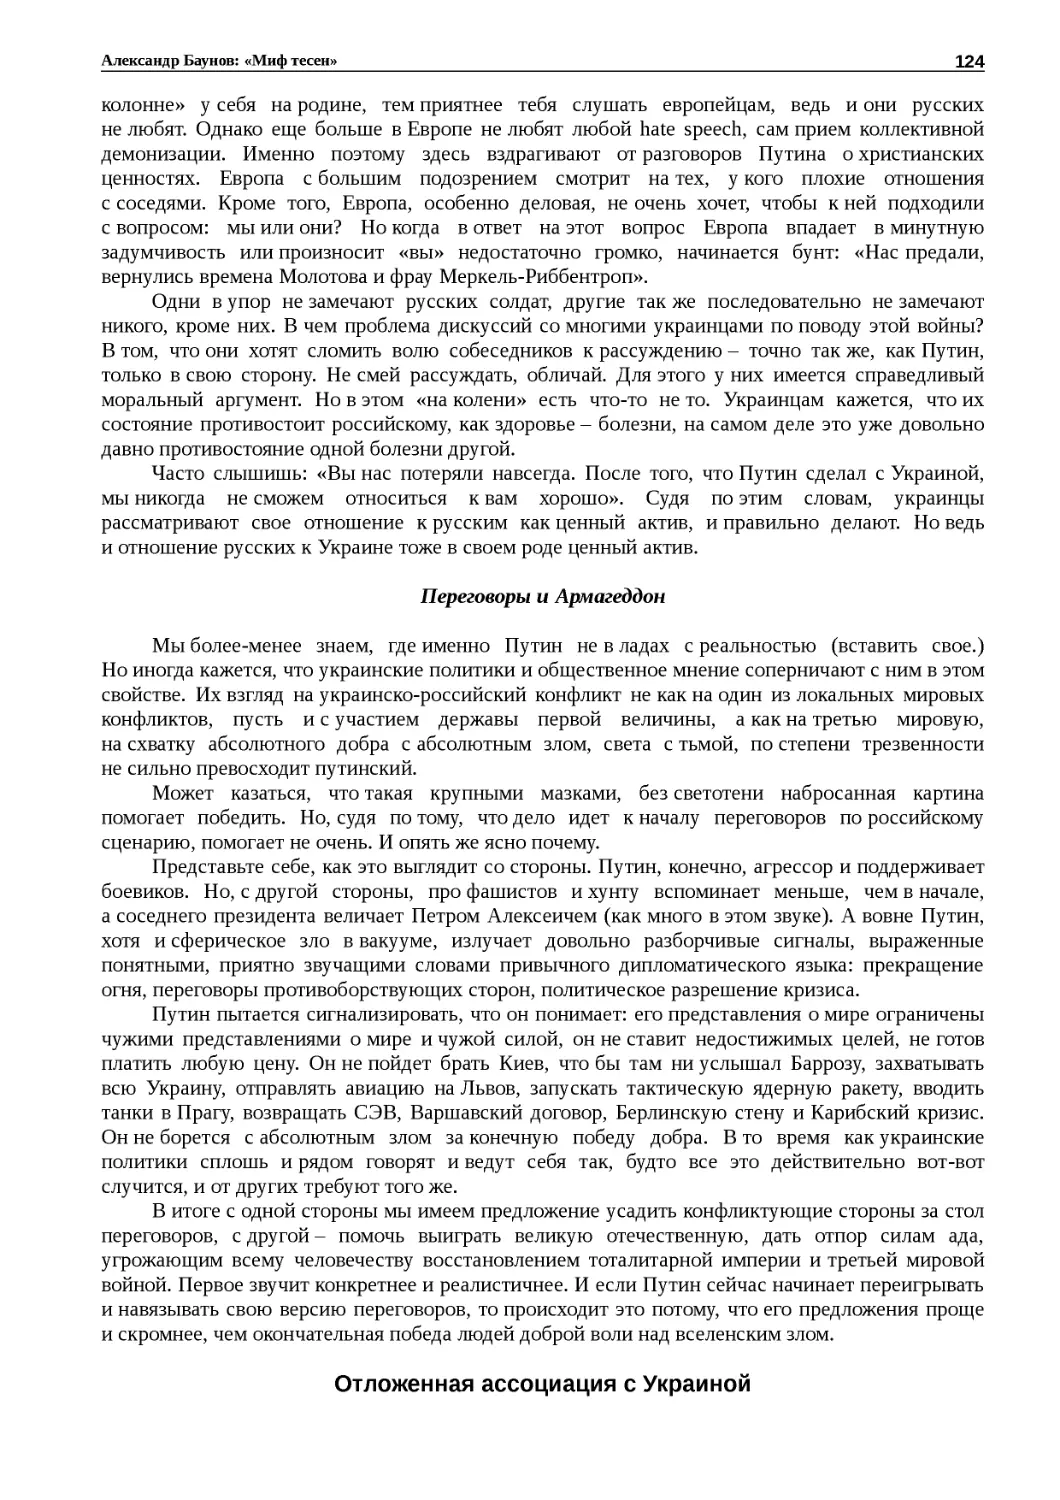 ﻿Переговоры и Армагеддо
﻿Отложенная ассоциация с Украино